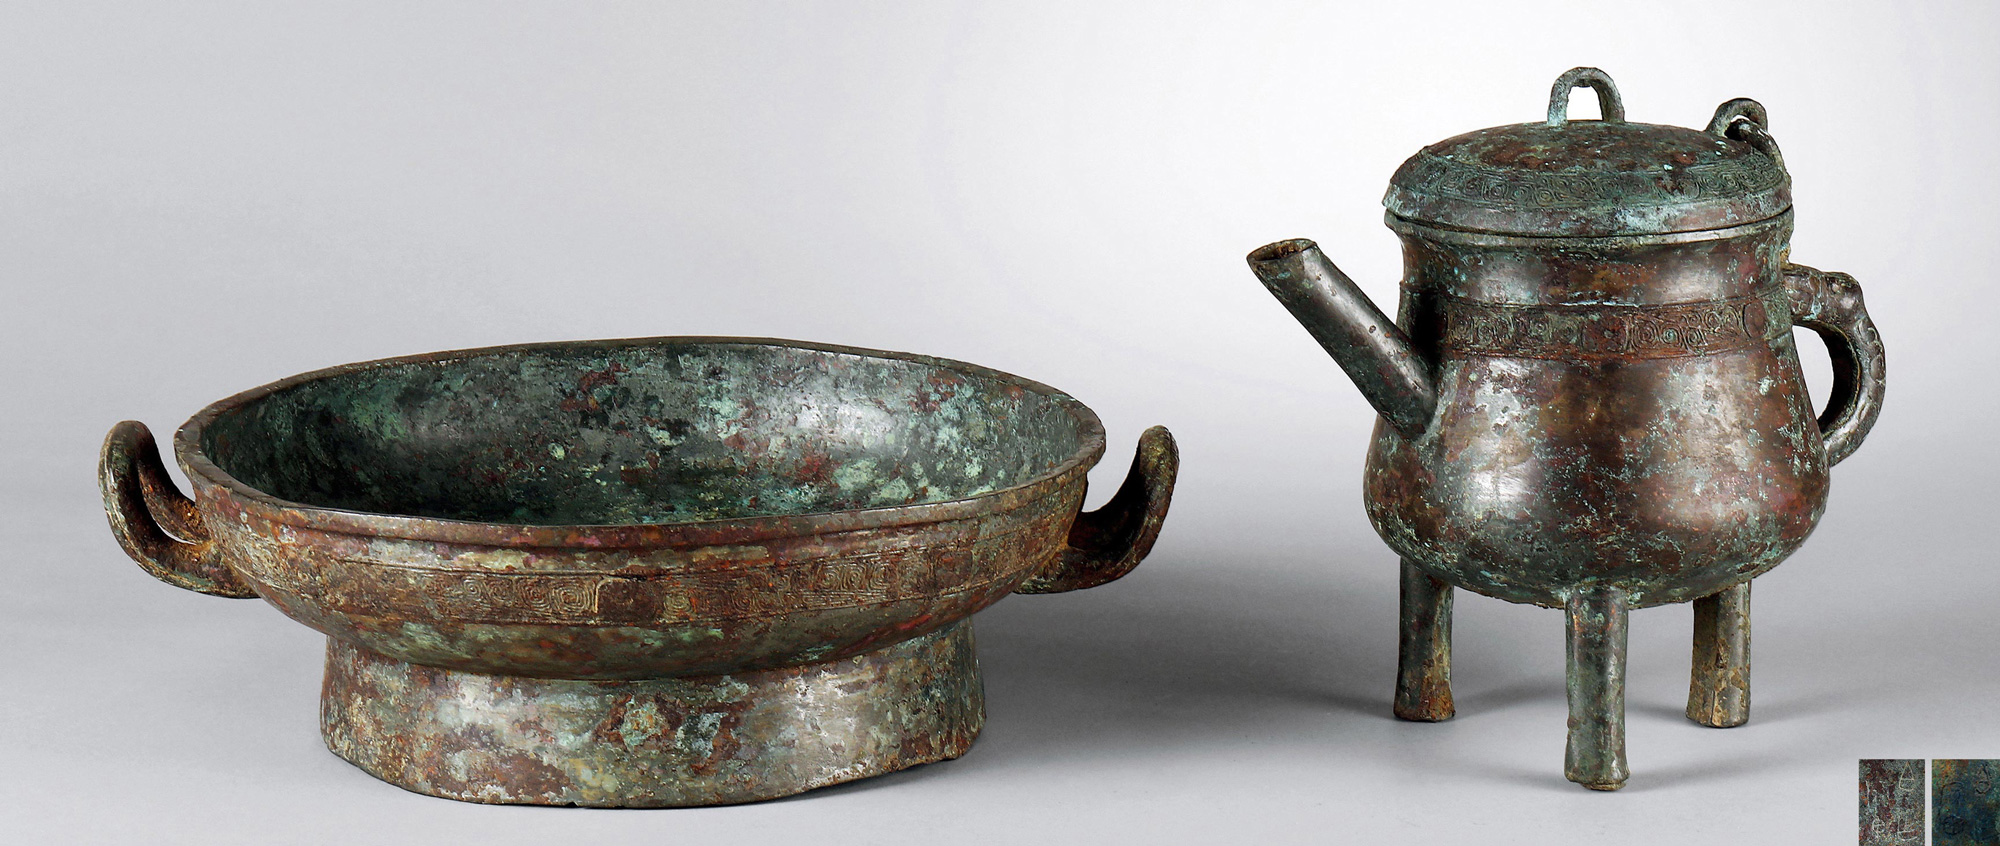 青铜盘及盉拍品分类青铜器创作年代西周尺寸壶高18